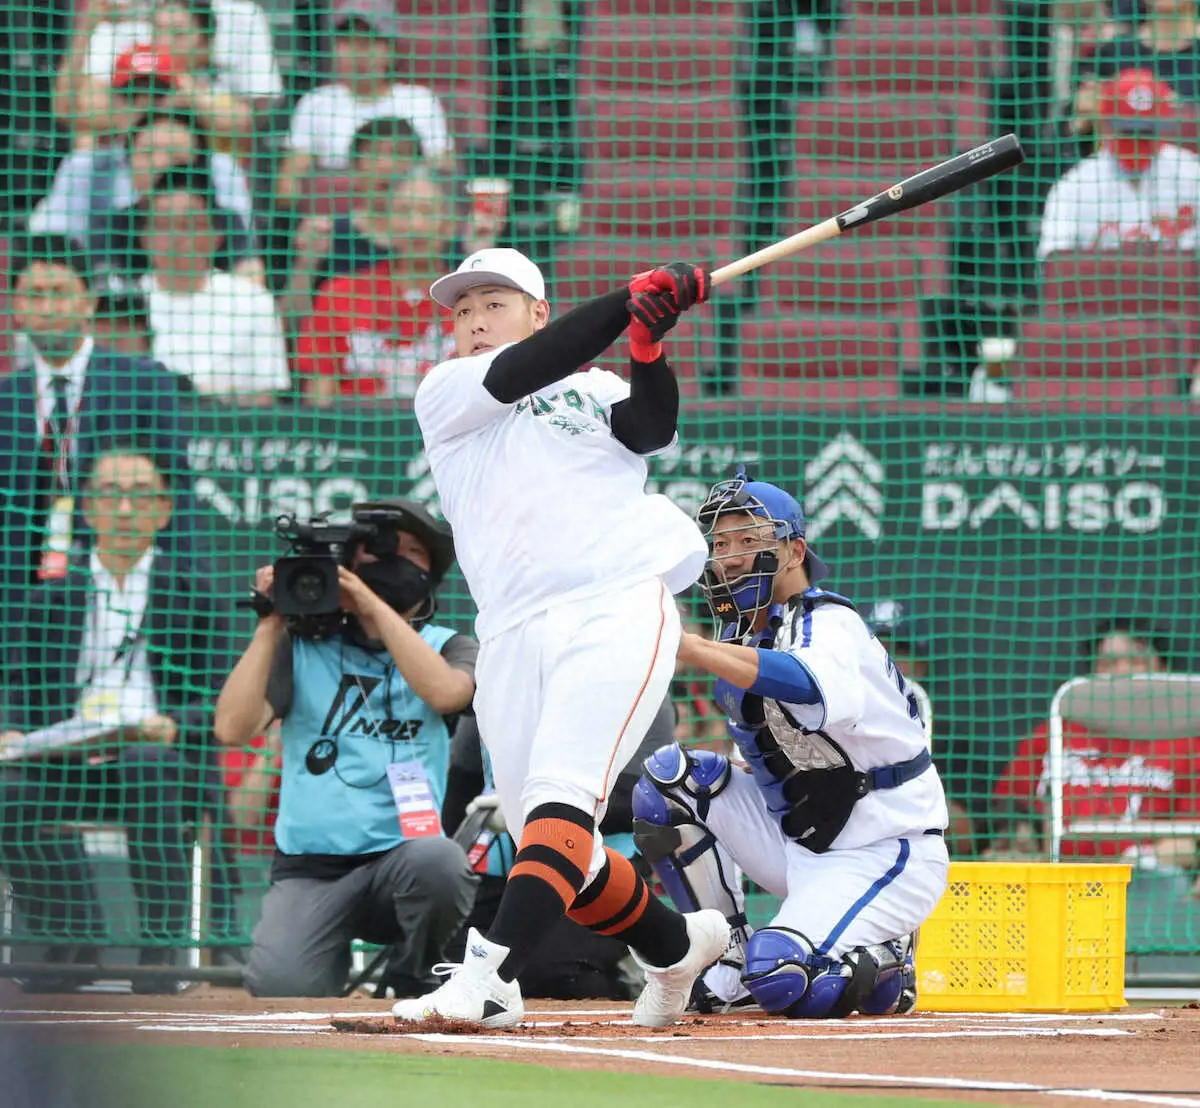 【球宴本塁打競争】巨人・岡本和真が優勝「本当に最高です」第1戦で2本も第2戦以降は本来の力発揮